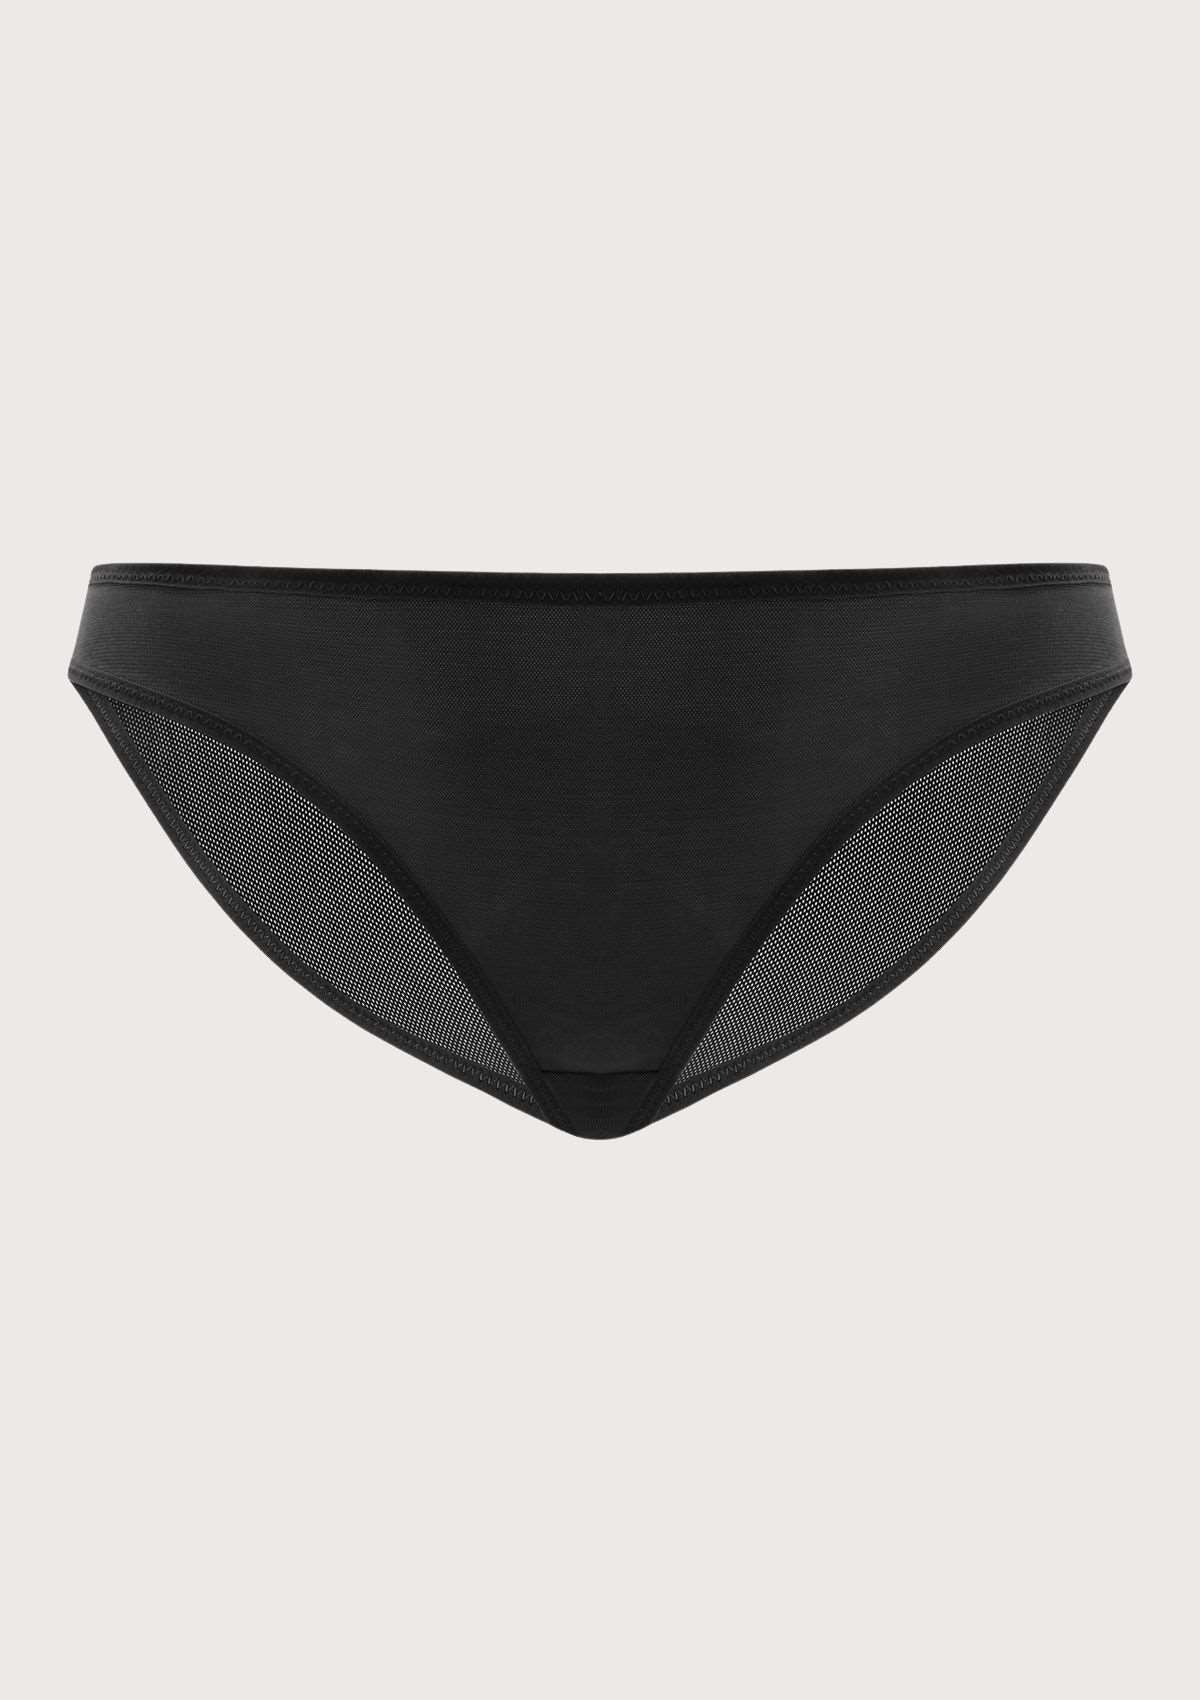 HSIA Billie Smooth Sheer Mesh Lightweight Soft Comfy Bikini Underwear - L / Dark Green